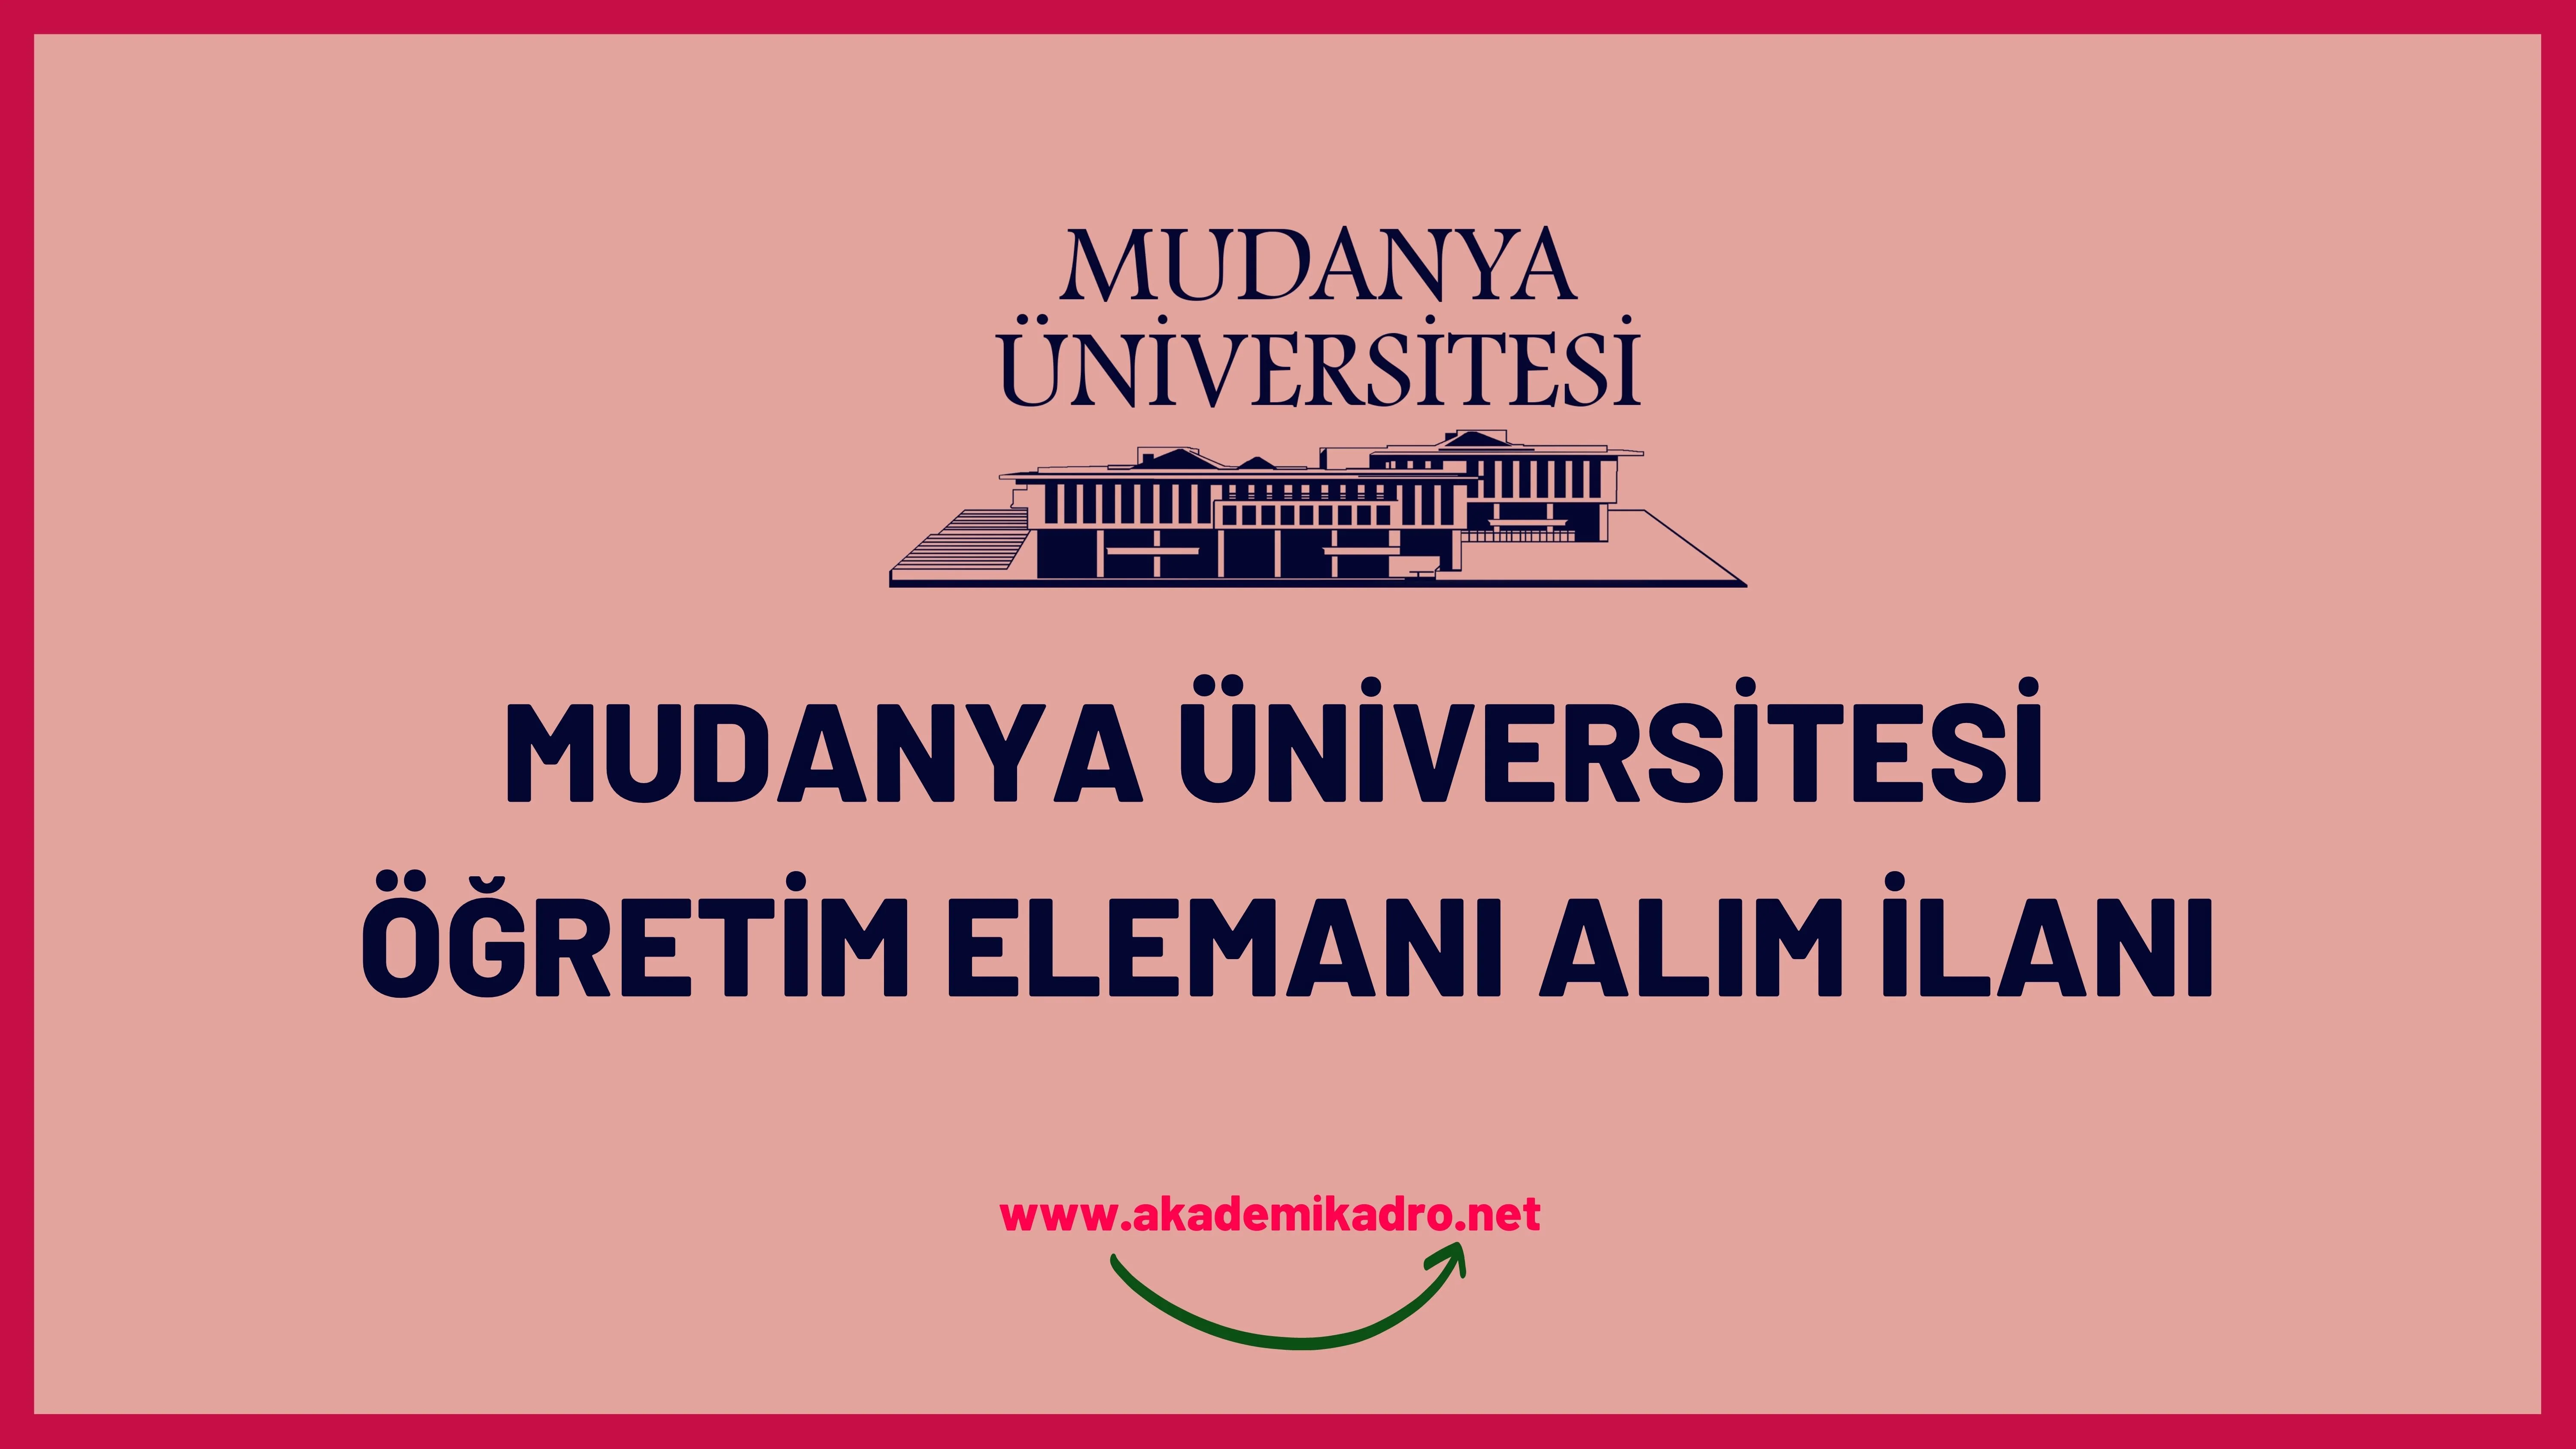 Mudanya ÜniversitesiAraştırma görevlisi ve Öğretim üyesi olmak üzere 10 Öğretim elemanı alacak.